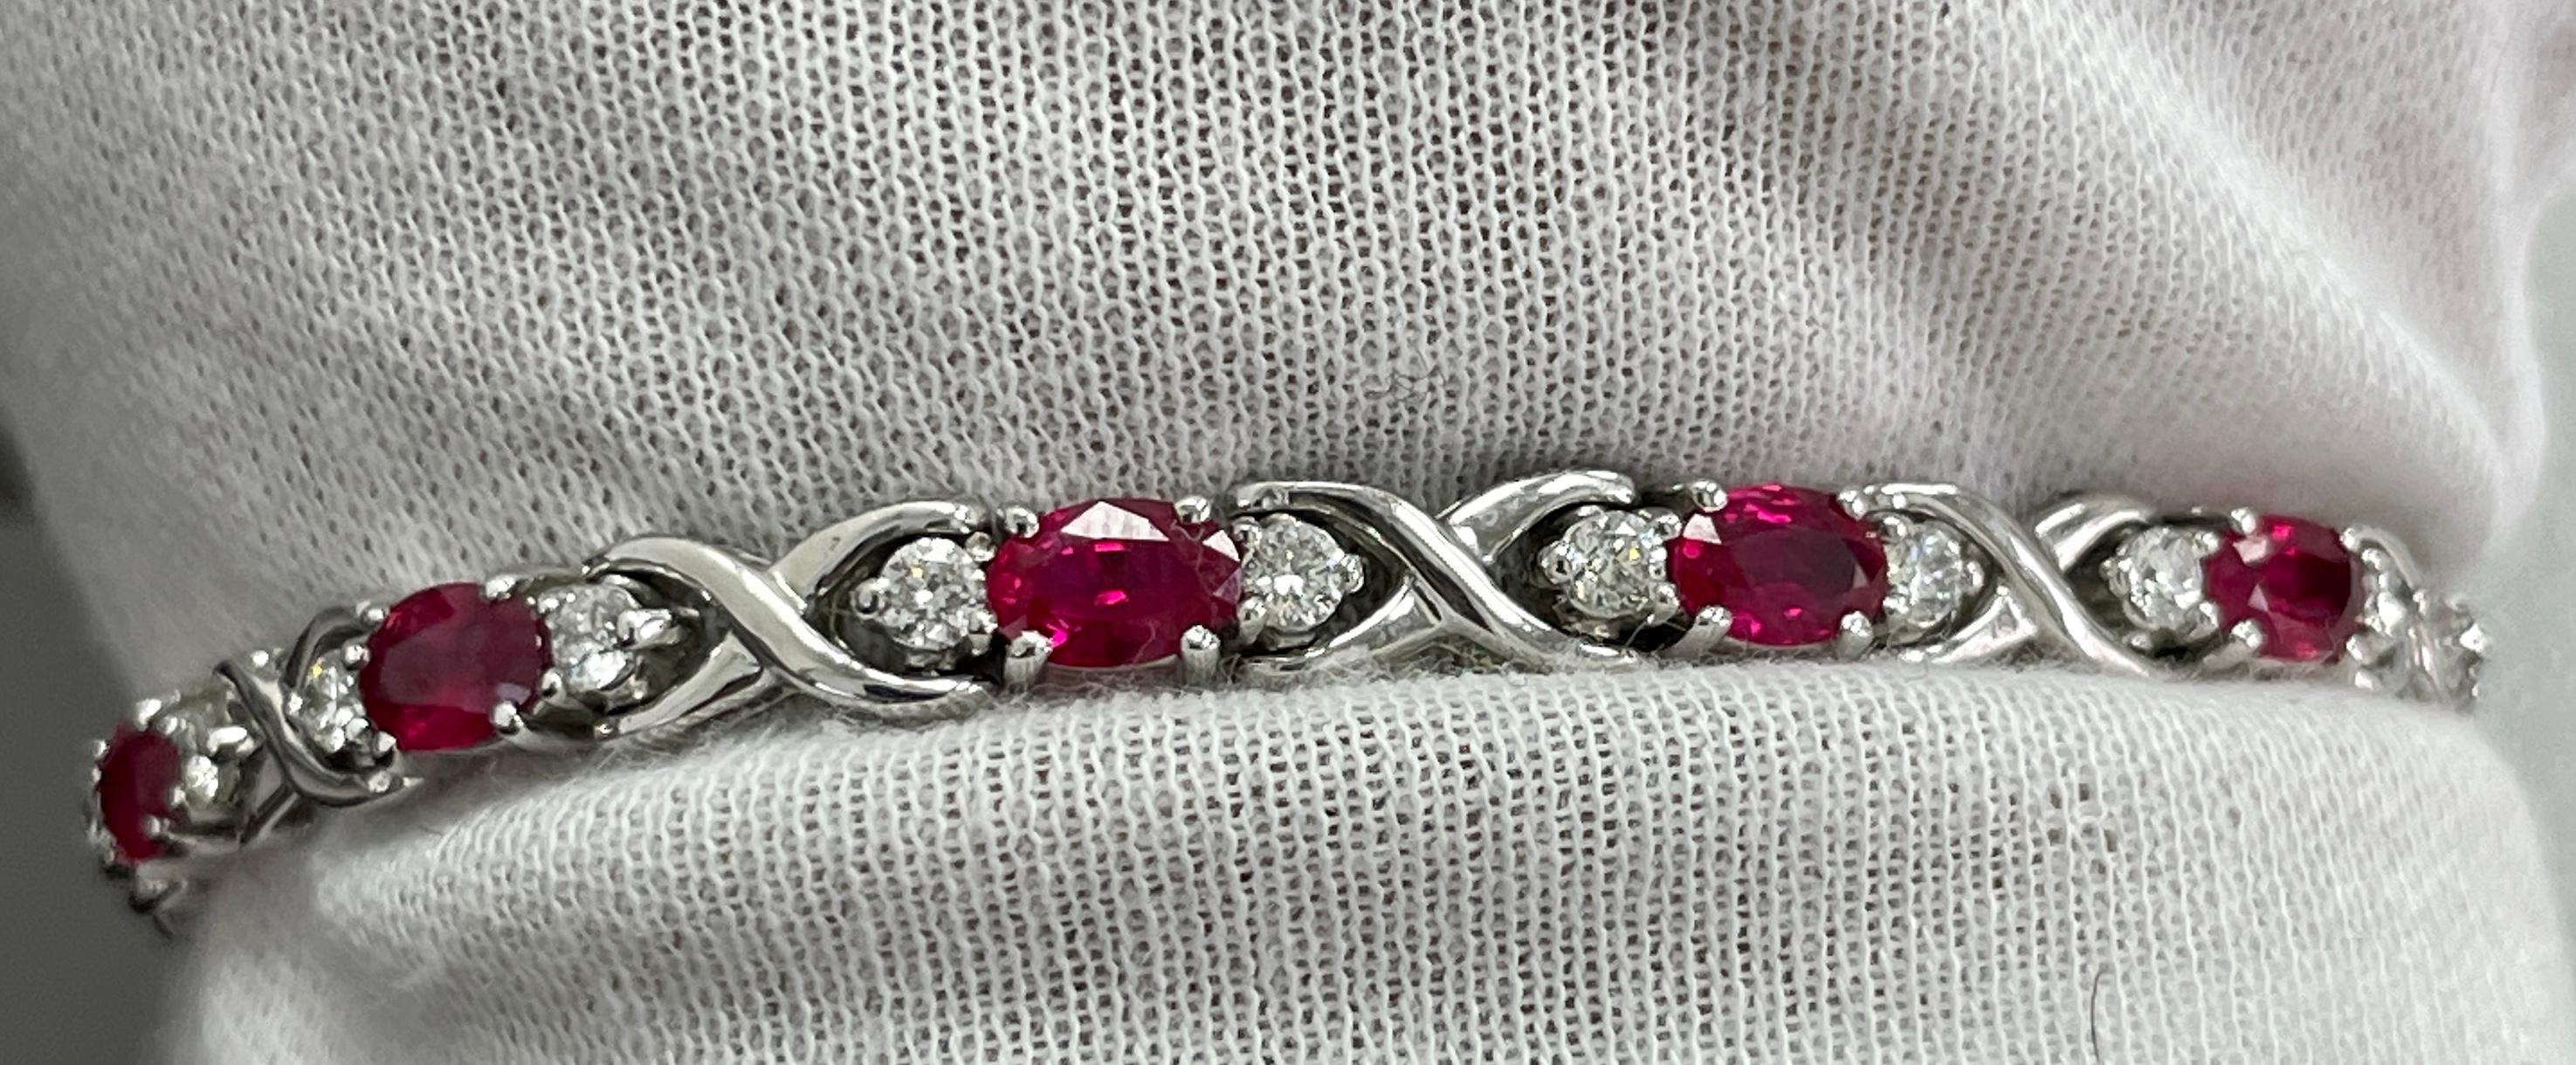 Ce bracelet contient de STUNNING 5x3 rubis ovales vibrants dans un bracelet en or blanc 14K contenant 1,40 carats de diamants blancs.